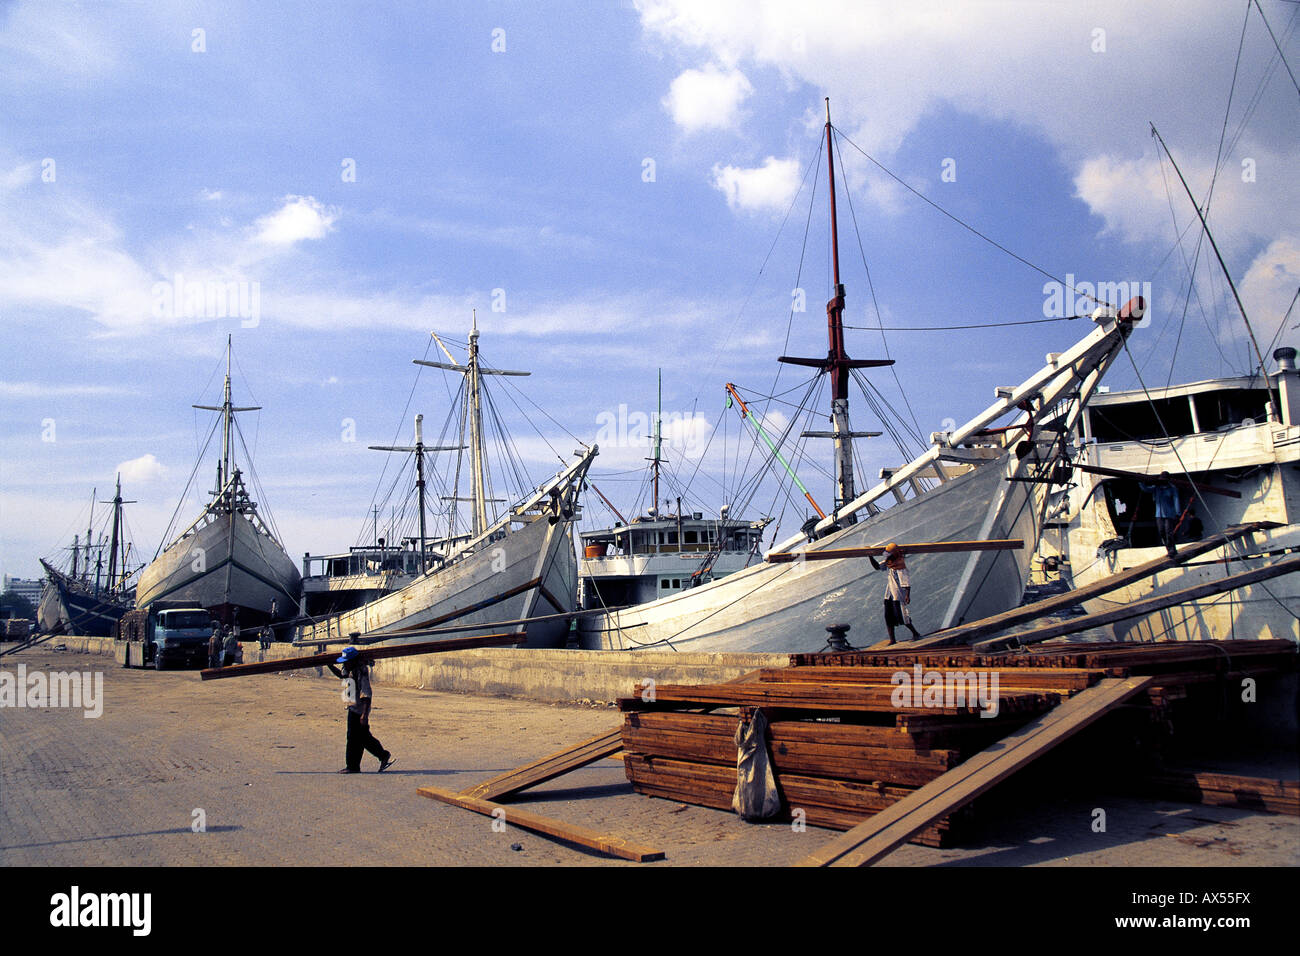 Les goélettes Bugis Sunda Kelapa au vieux port de Jakarta, Indonésie Banque D'Images